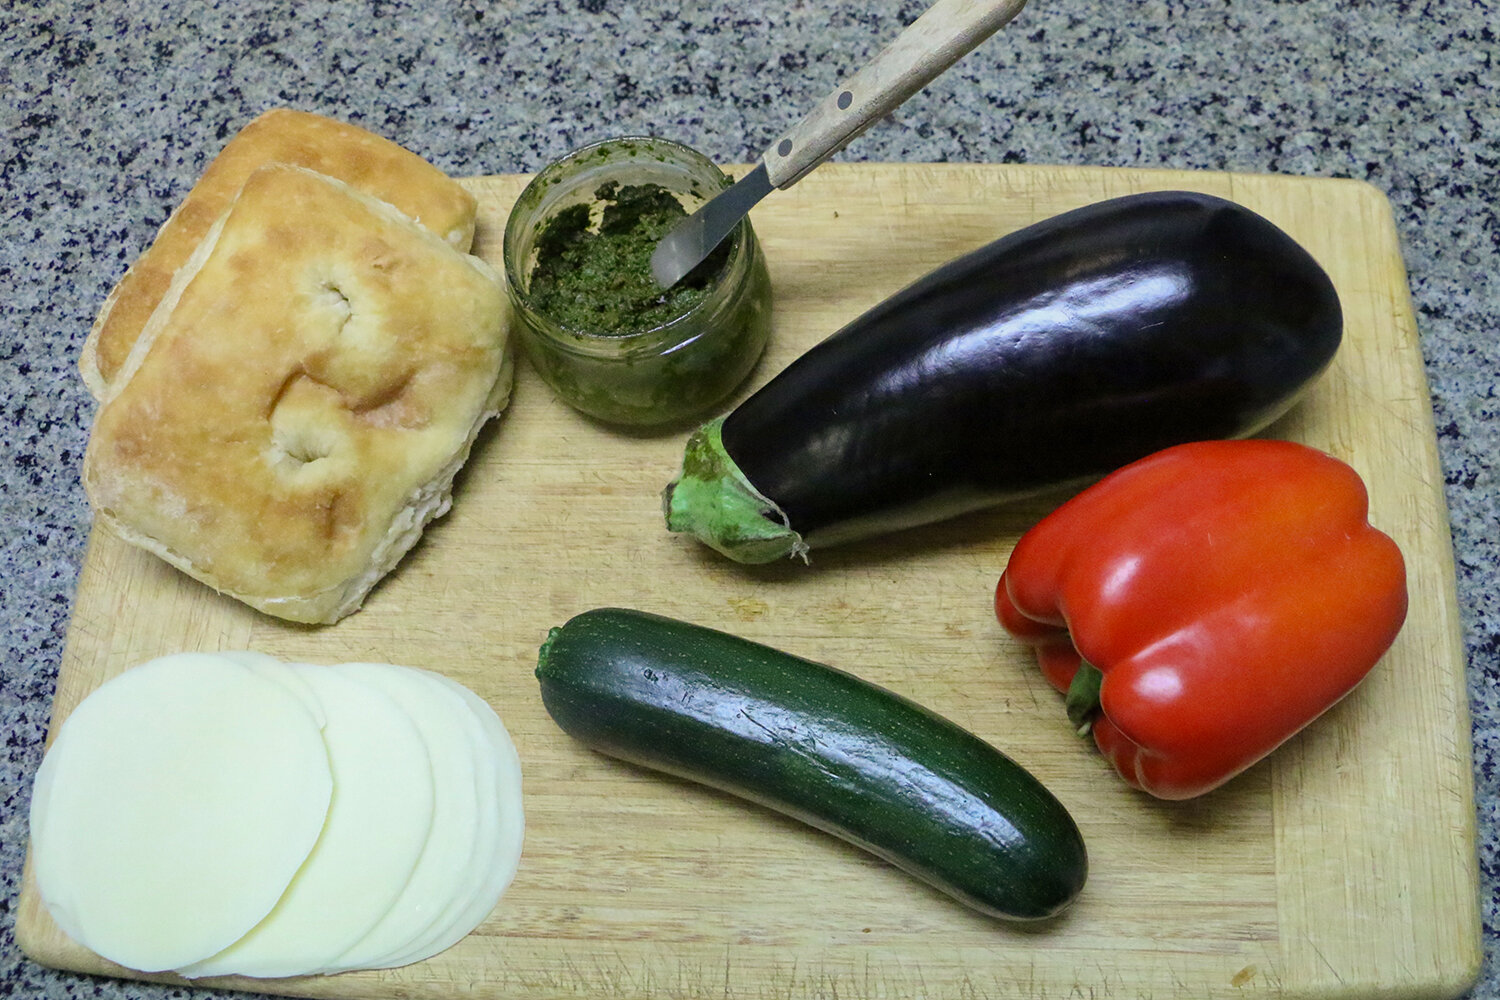 Veggie sandwich ingredients